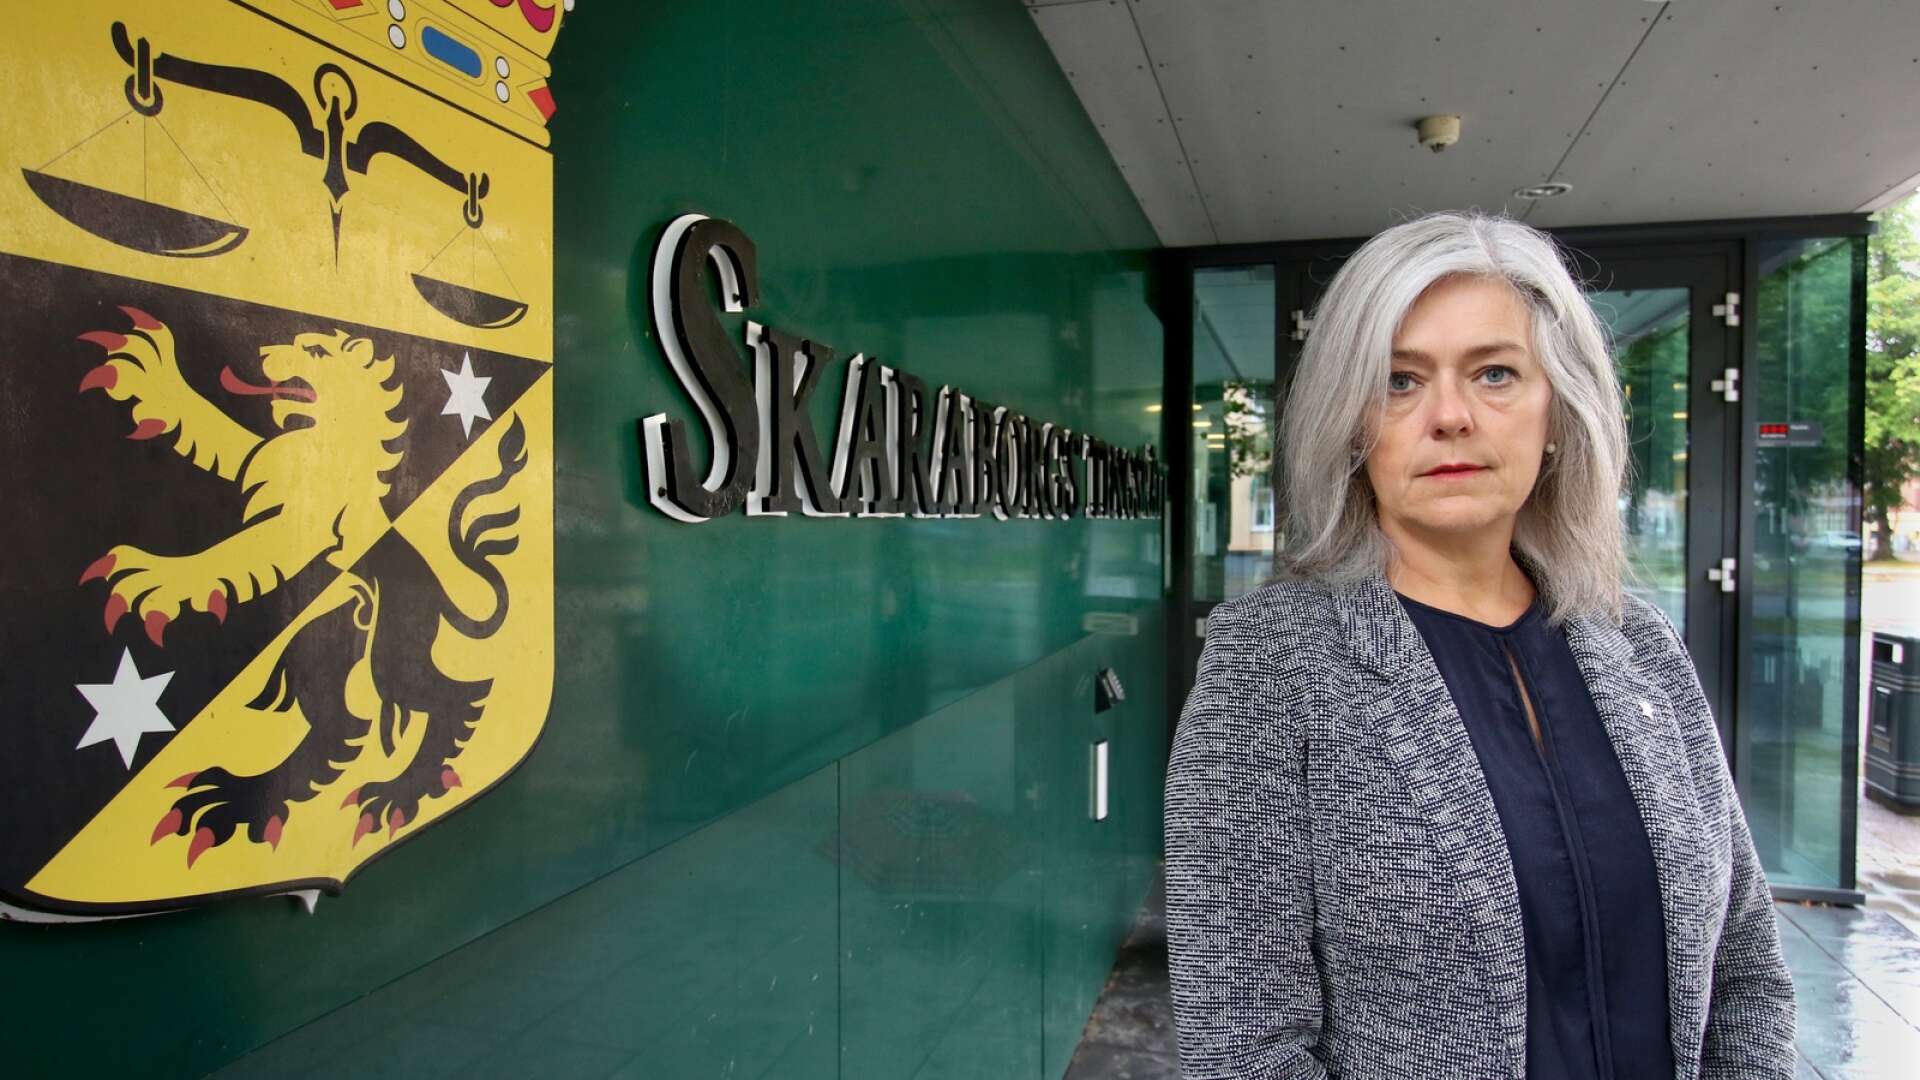 Mannen som är i 30-årsåldern och hemmahörande i Stockholmstrakten häktades vid Skaraborgs tingsrätt i Skövde på måndagen. Målsägande i fallet är en vuxen person, närstående till den nu häktade mannen. Det uppger kammaråklagare Ylva Lundgren för SLA.